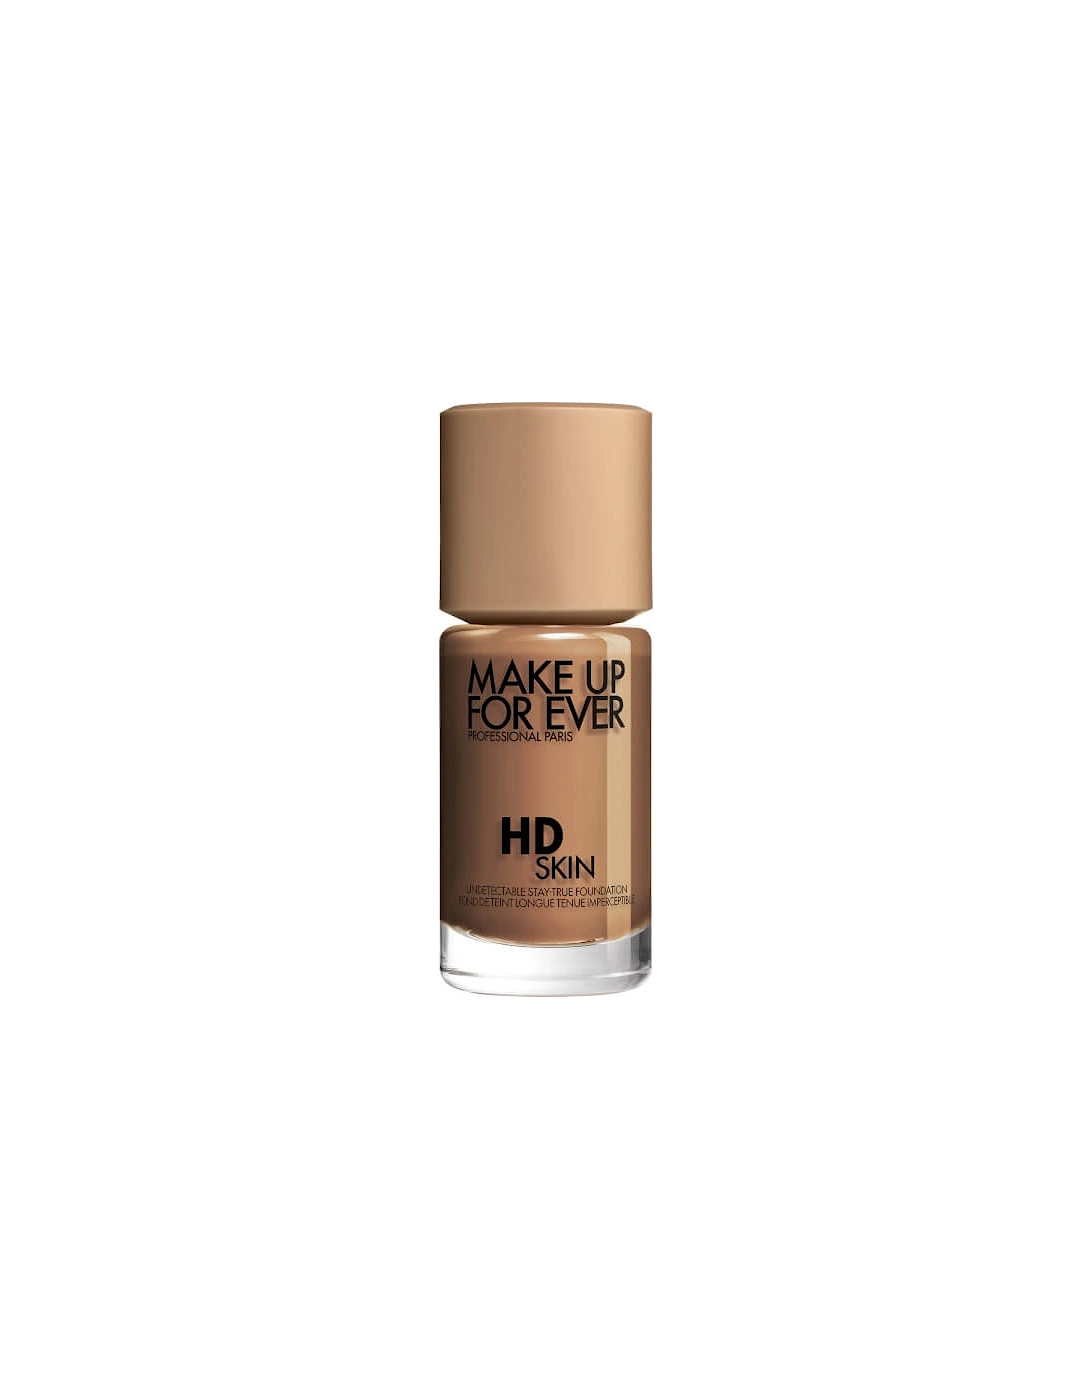 HD Skin Foundation - 3R58 Cool Hazelnut, 2 of 1